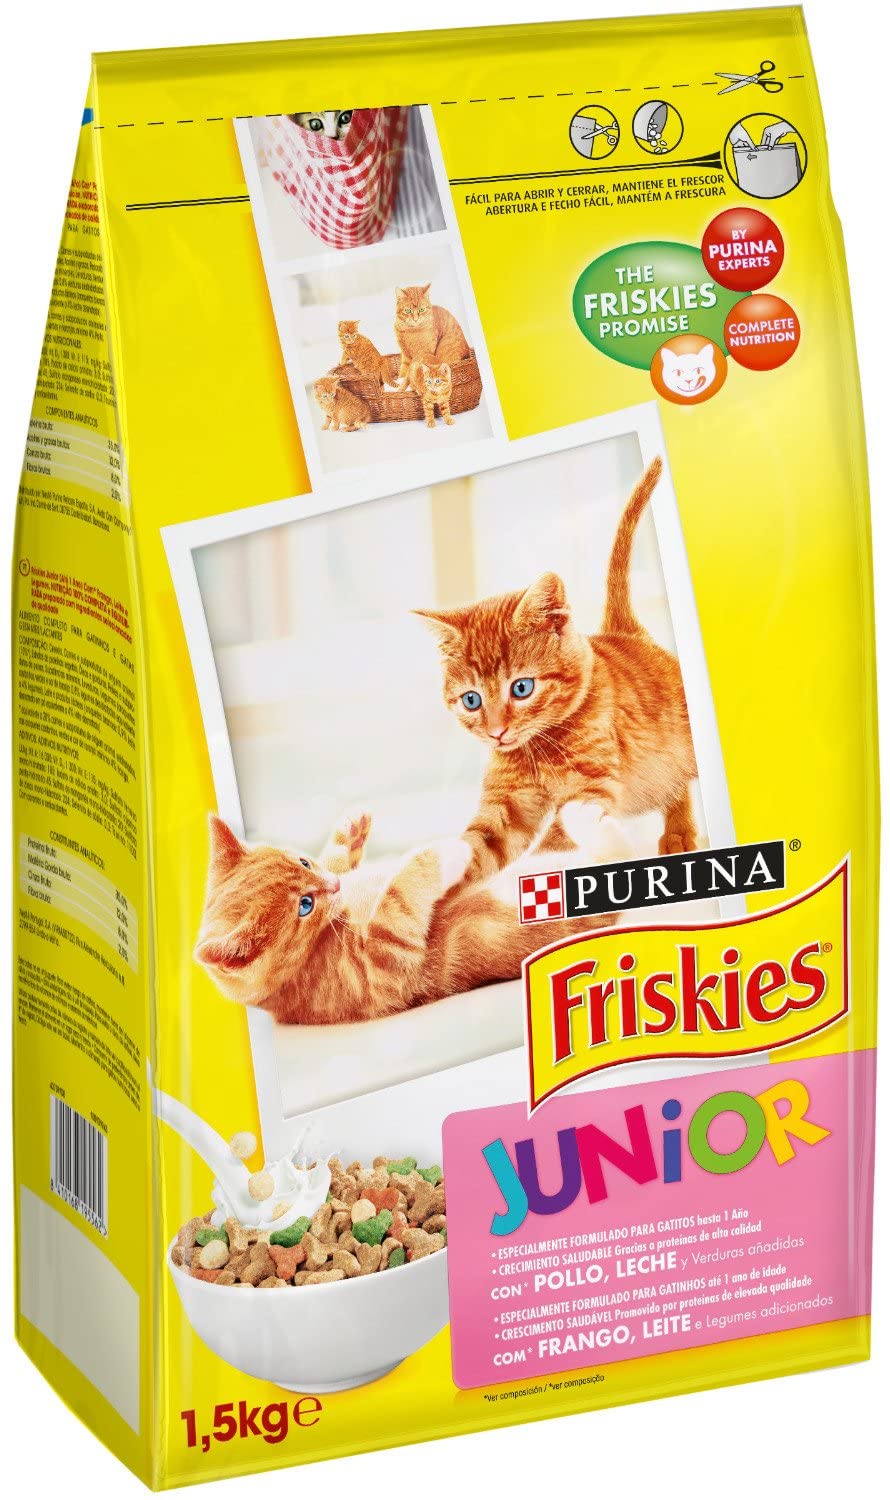  Friskies - Gato Junior con Pollo, Leche y Verduras añadidas, 1,5 Kg 